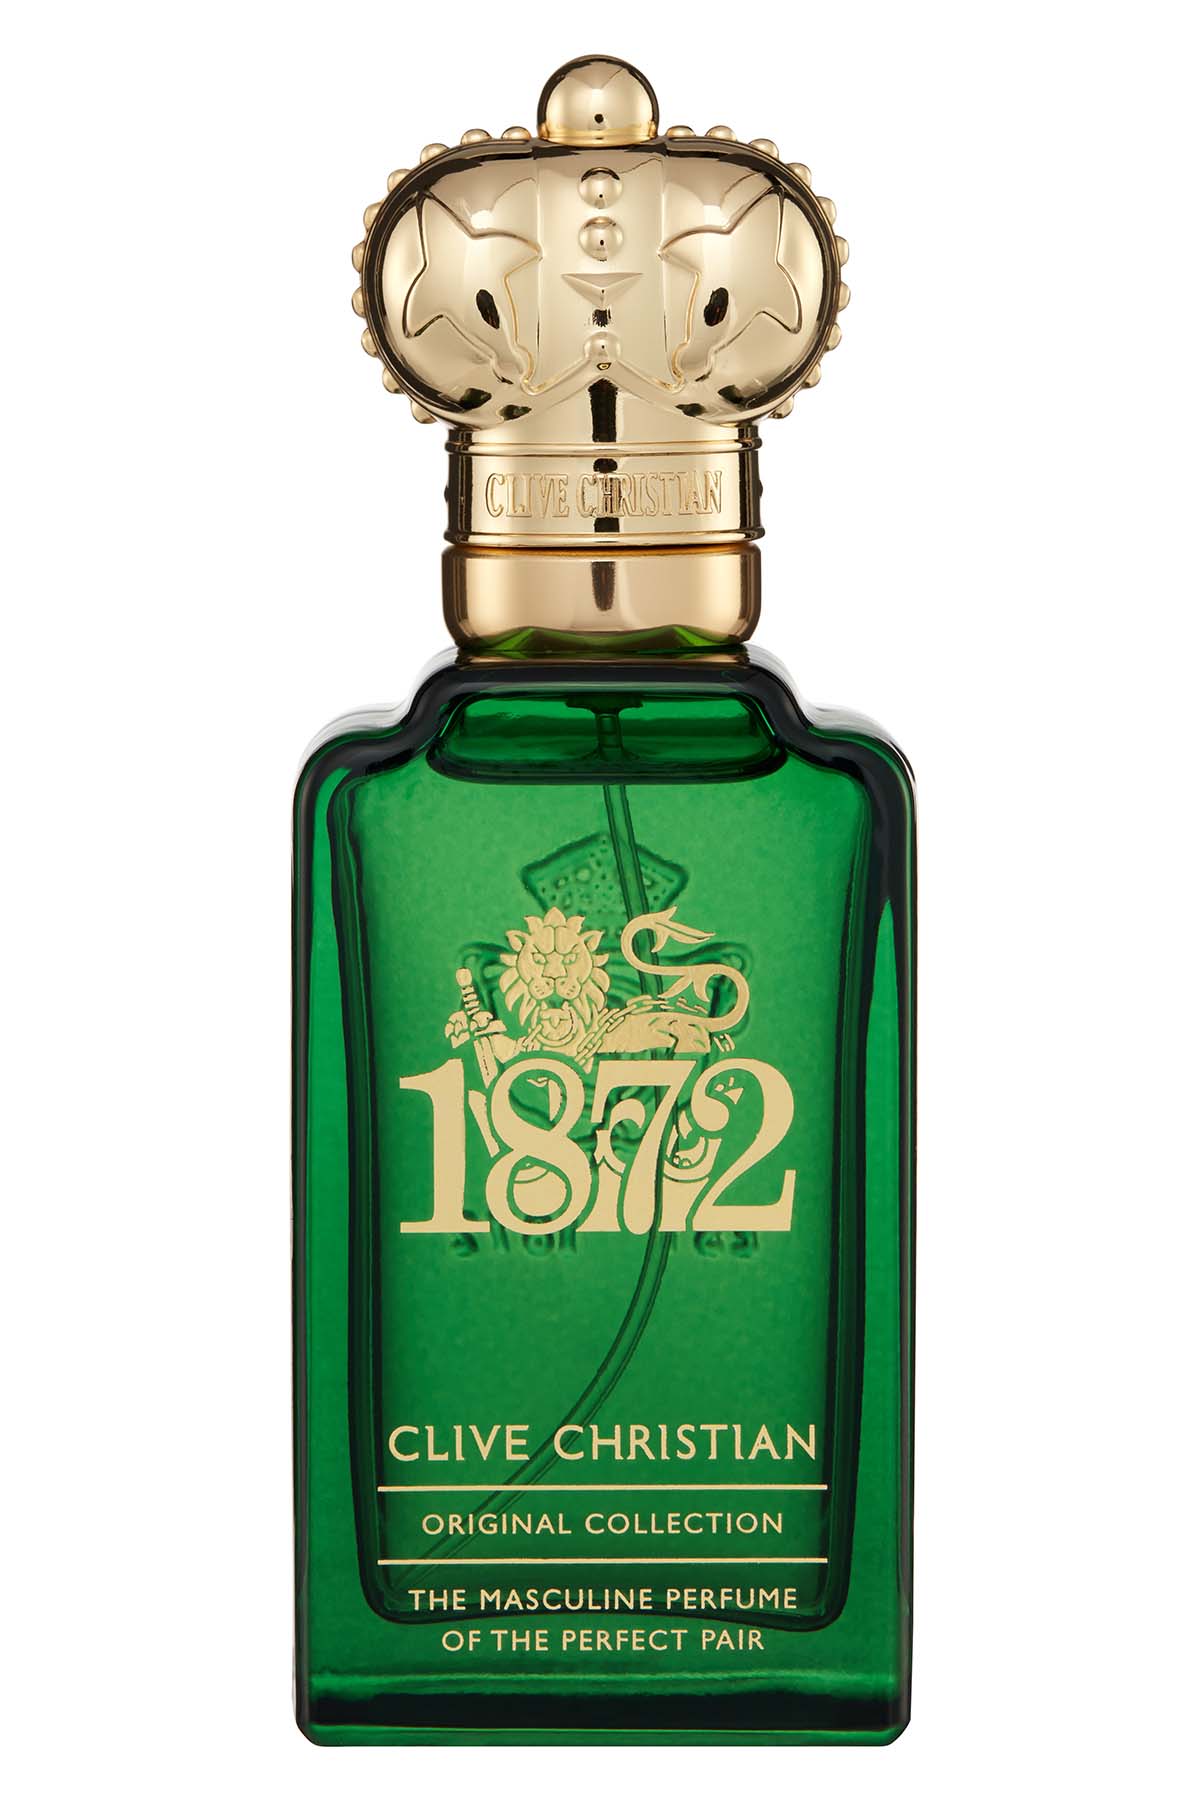 Clive Christian 1872 Masculine Edition Eau de Parfum 50ML